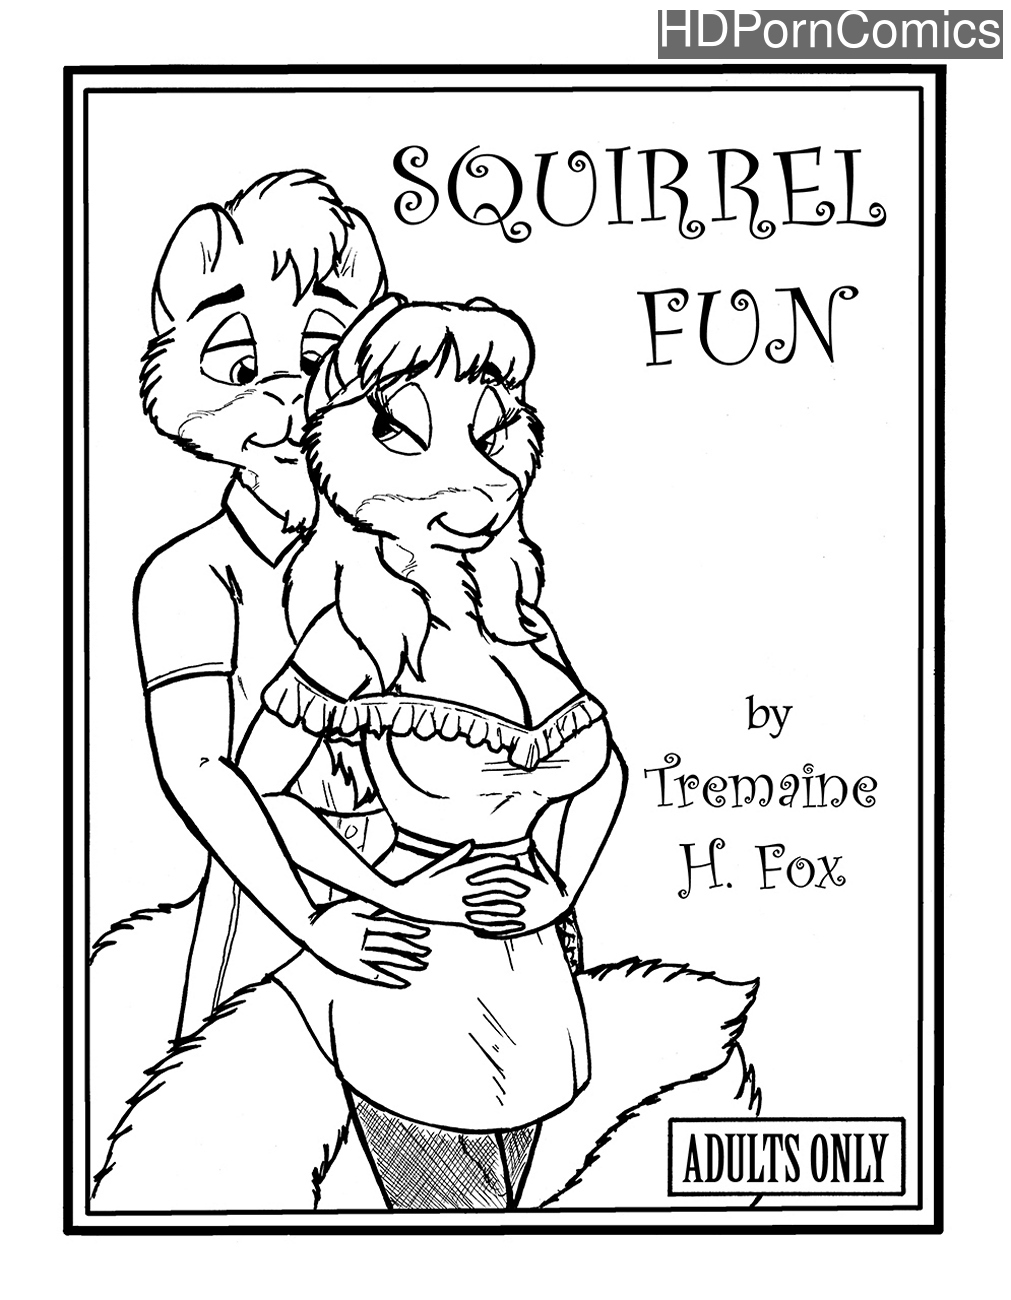 Squirrel Fun comic porn - HD Porn Comics